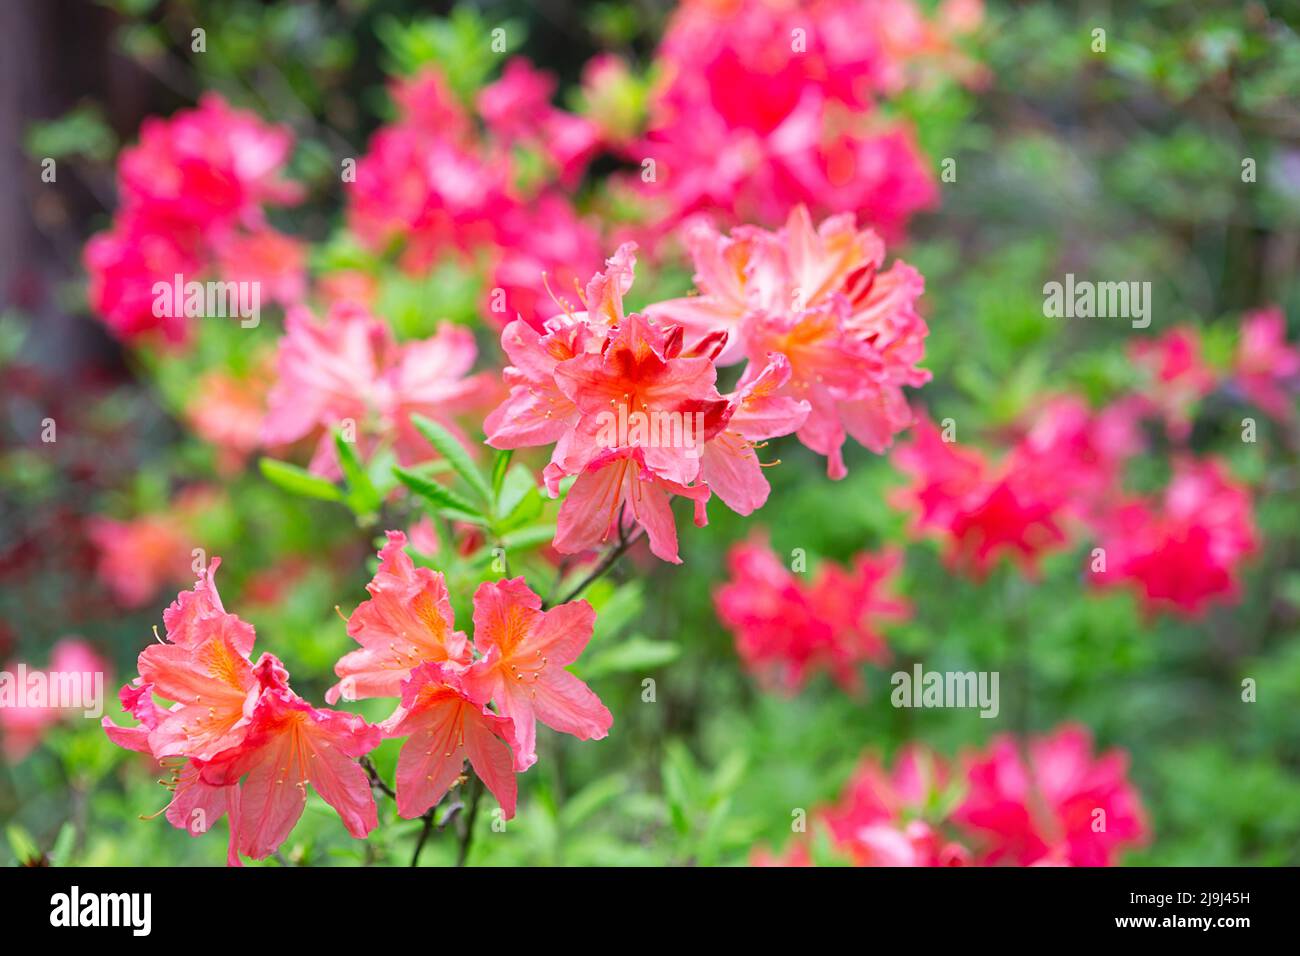 Japanischer Rhododendron (Rhododendron japonicum) im botanischen Garten. Blühender Rhododendron im Frühling, Internet-Frühlingsbanner. Bac mit Frühlingsblumen Stockfoto